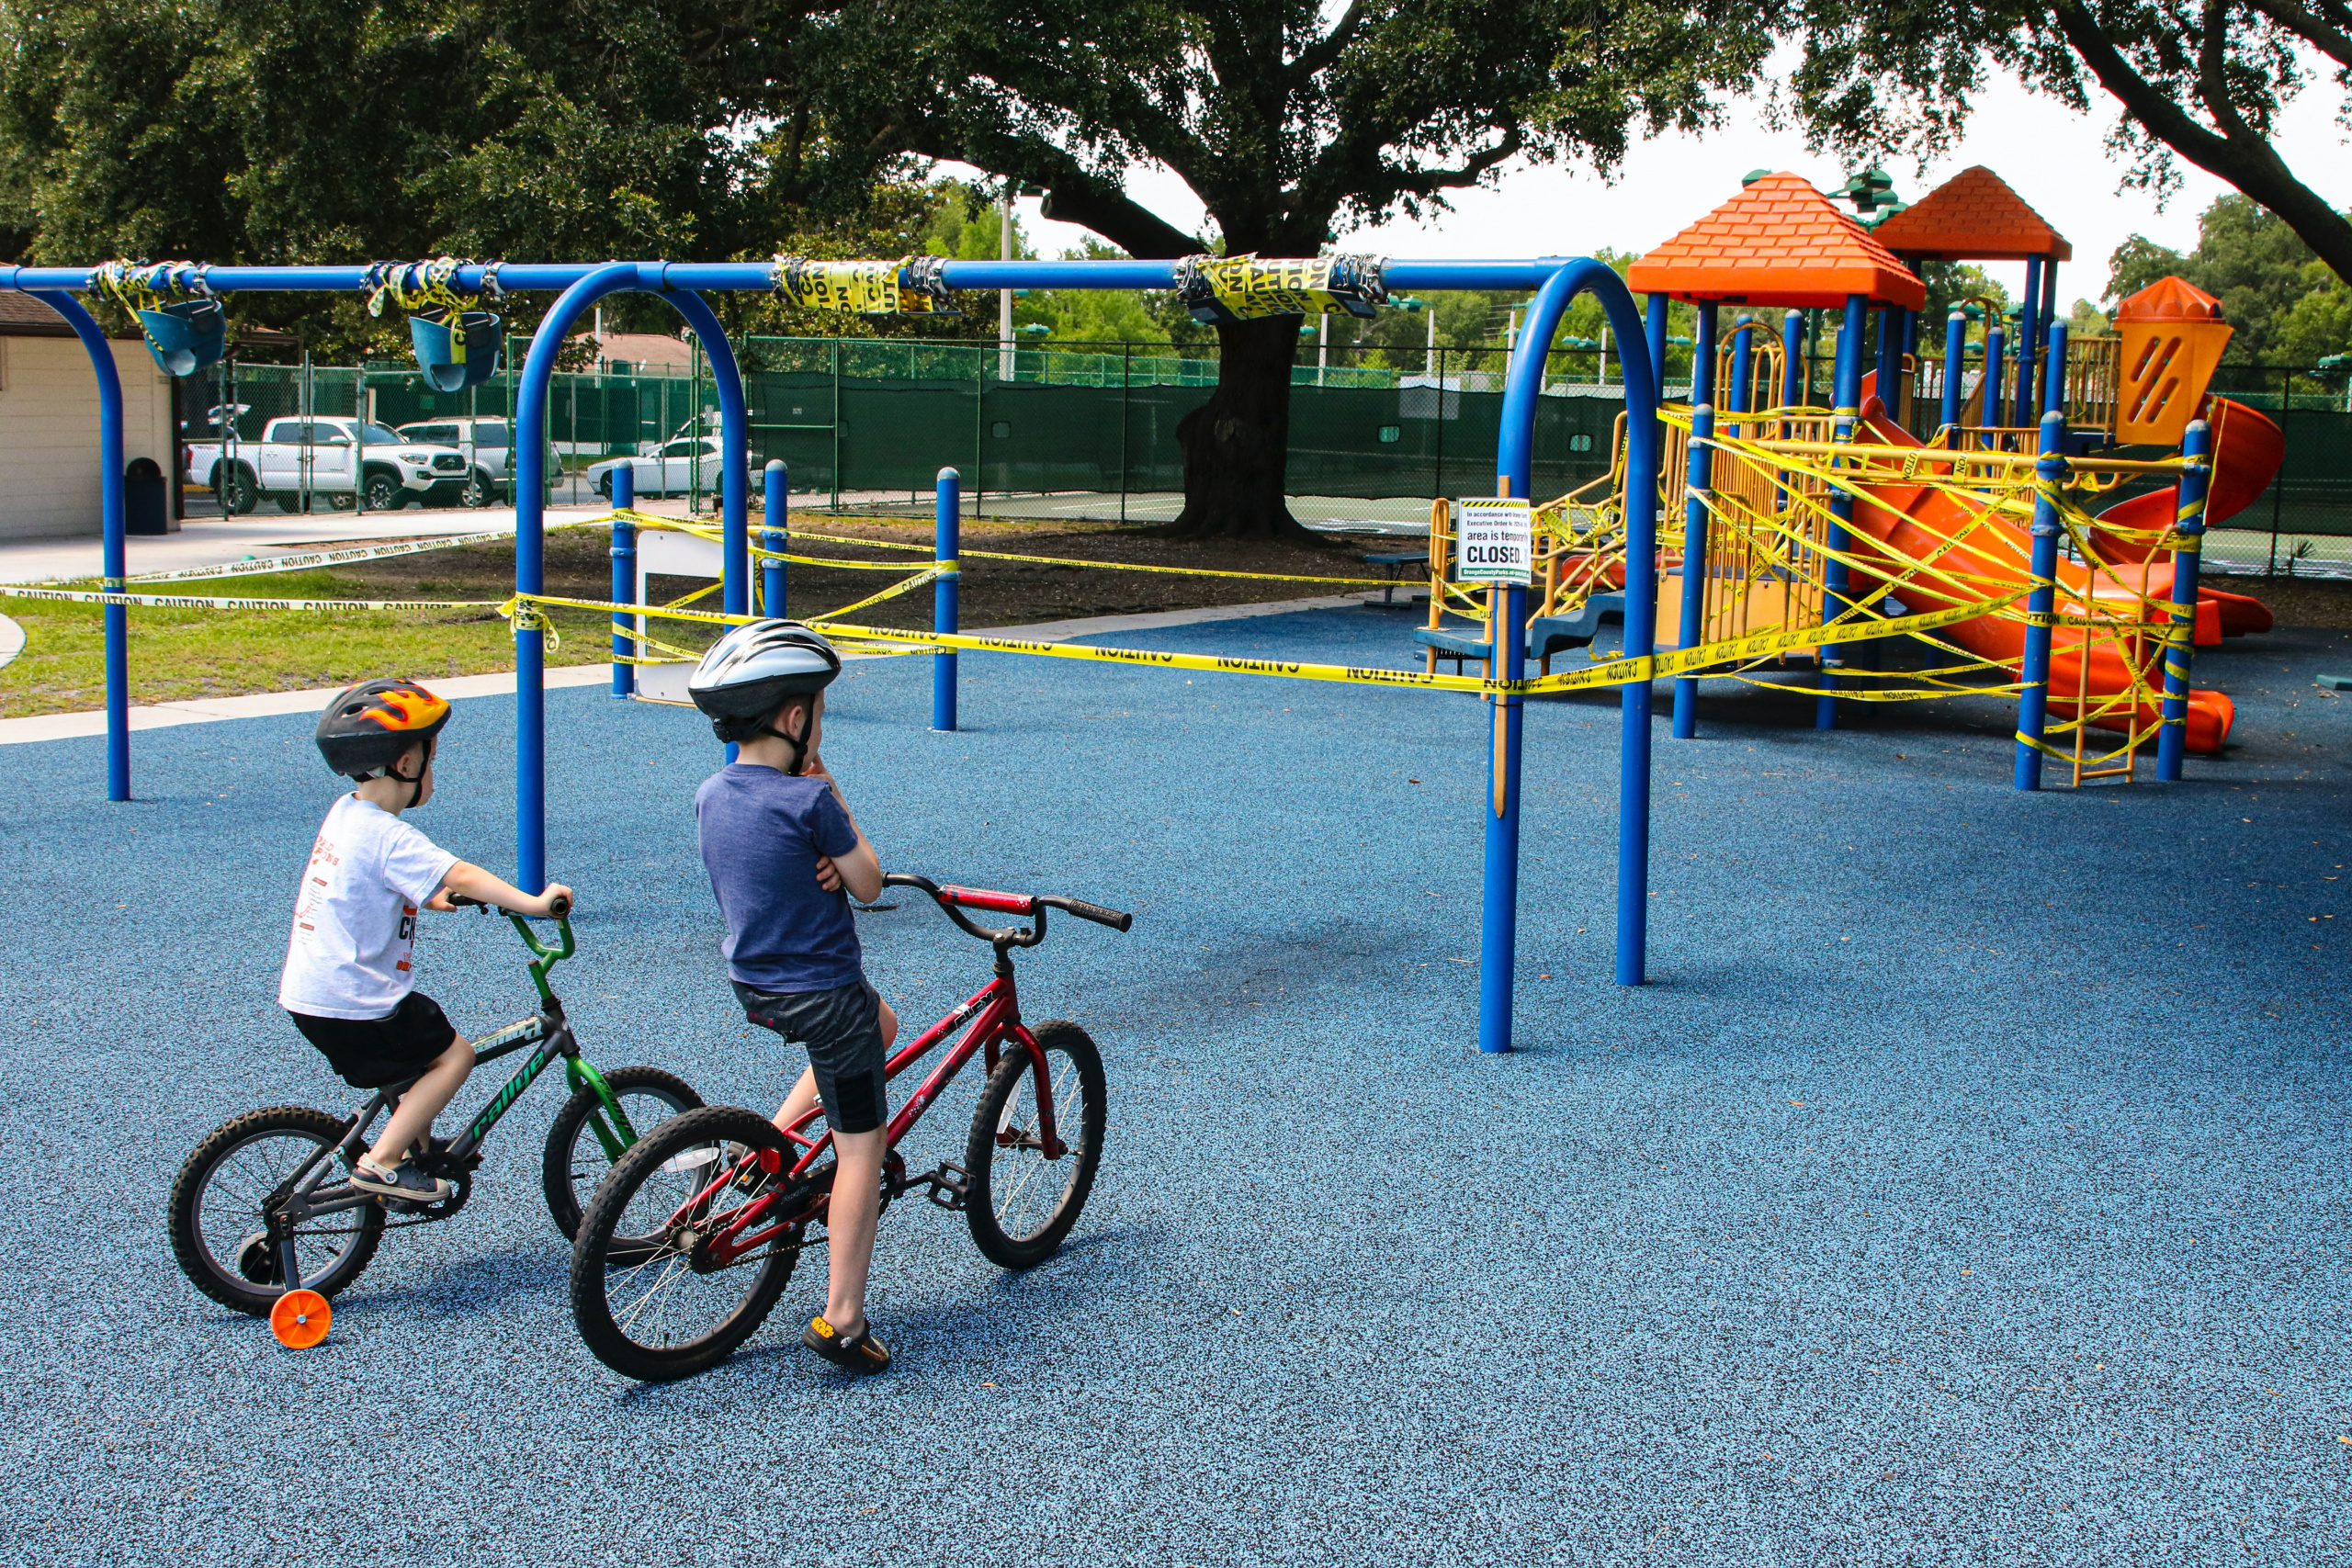 Children staring at closed playground equipment